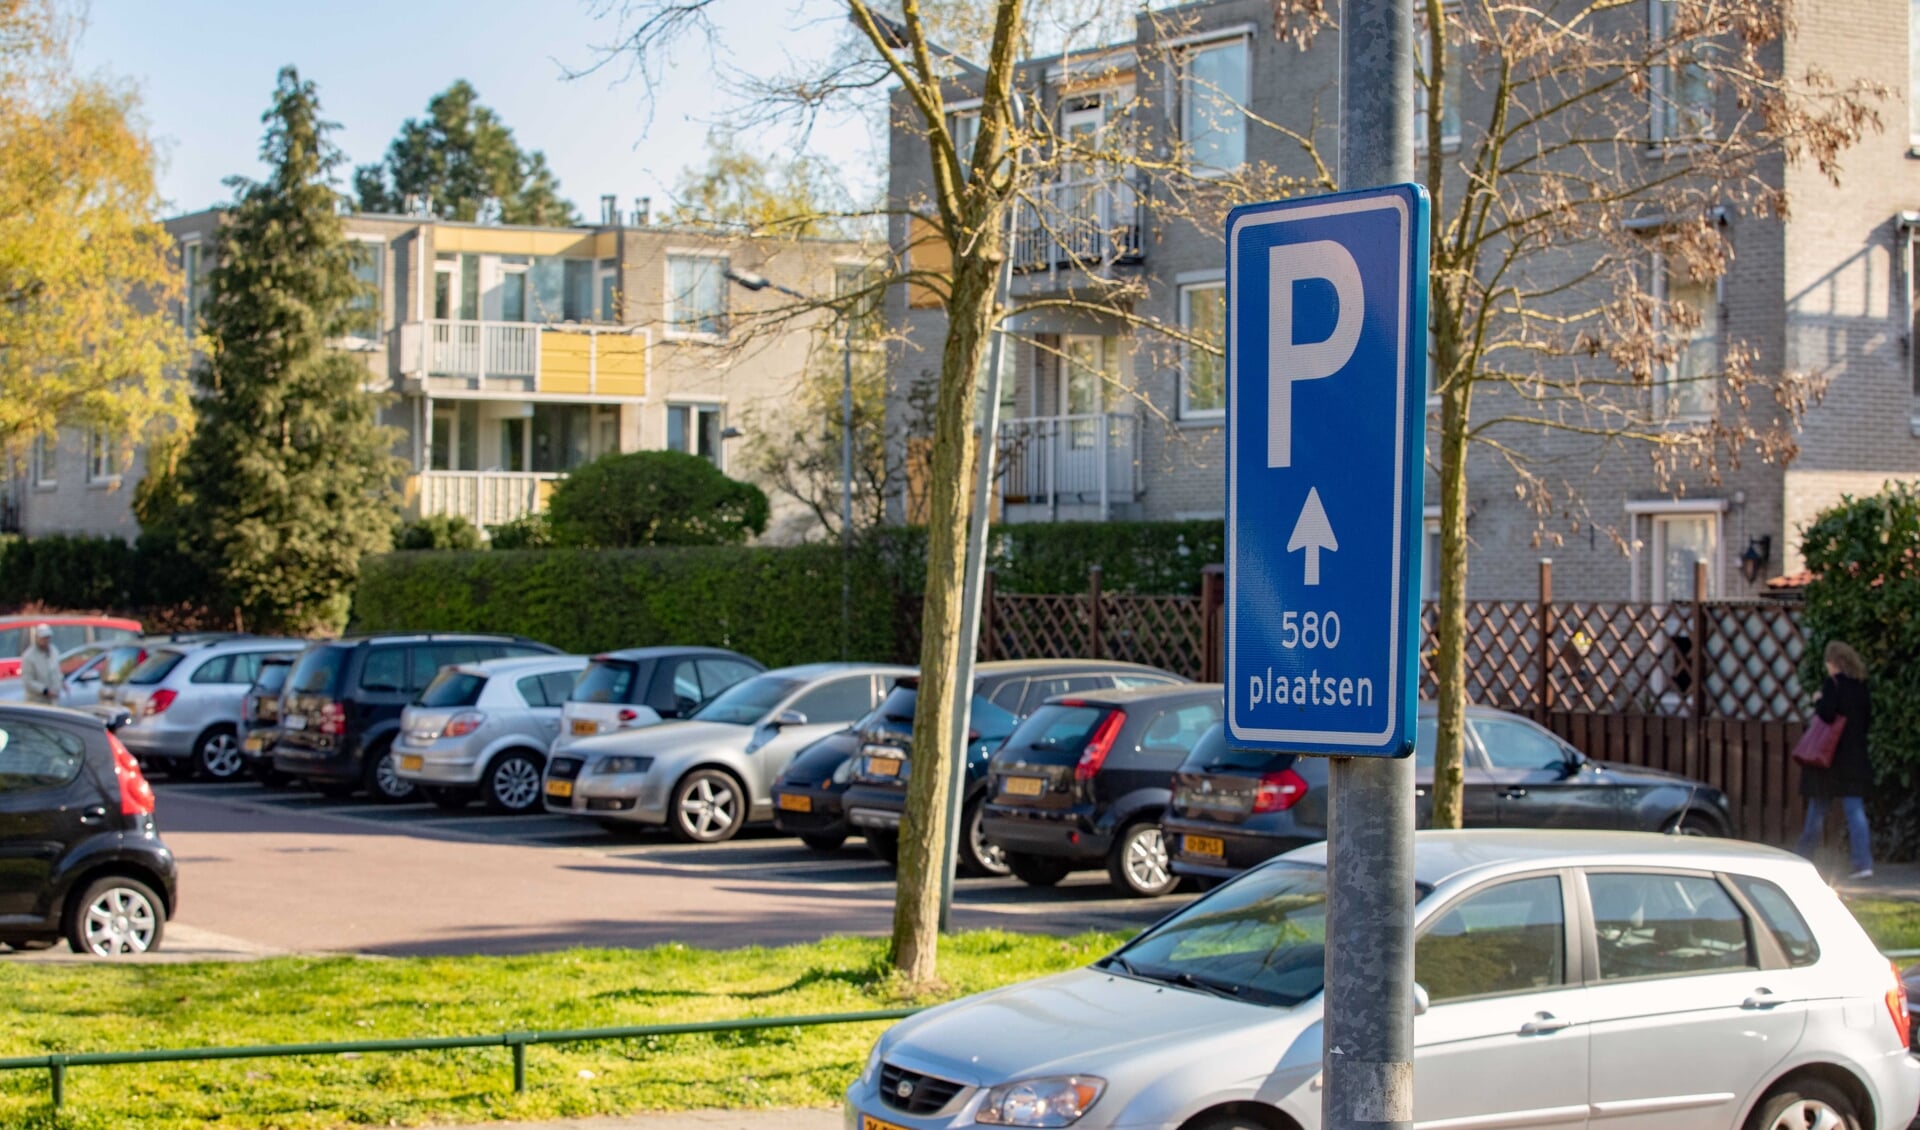 Hoge parkeerdruk en veel smalle parkeerplekken in de buurt rondom Tergooi.